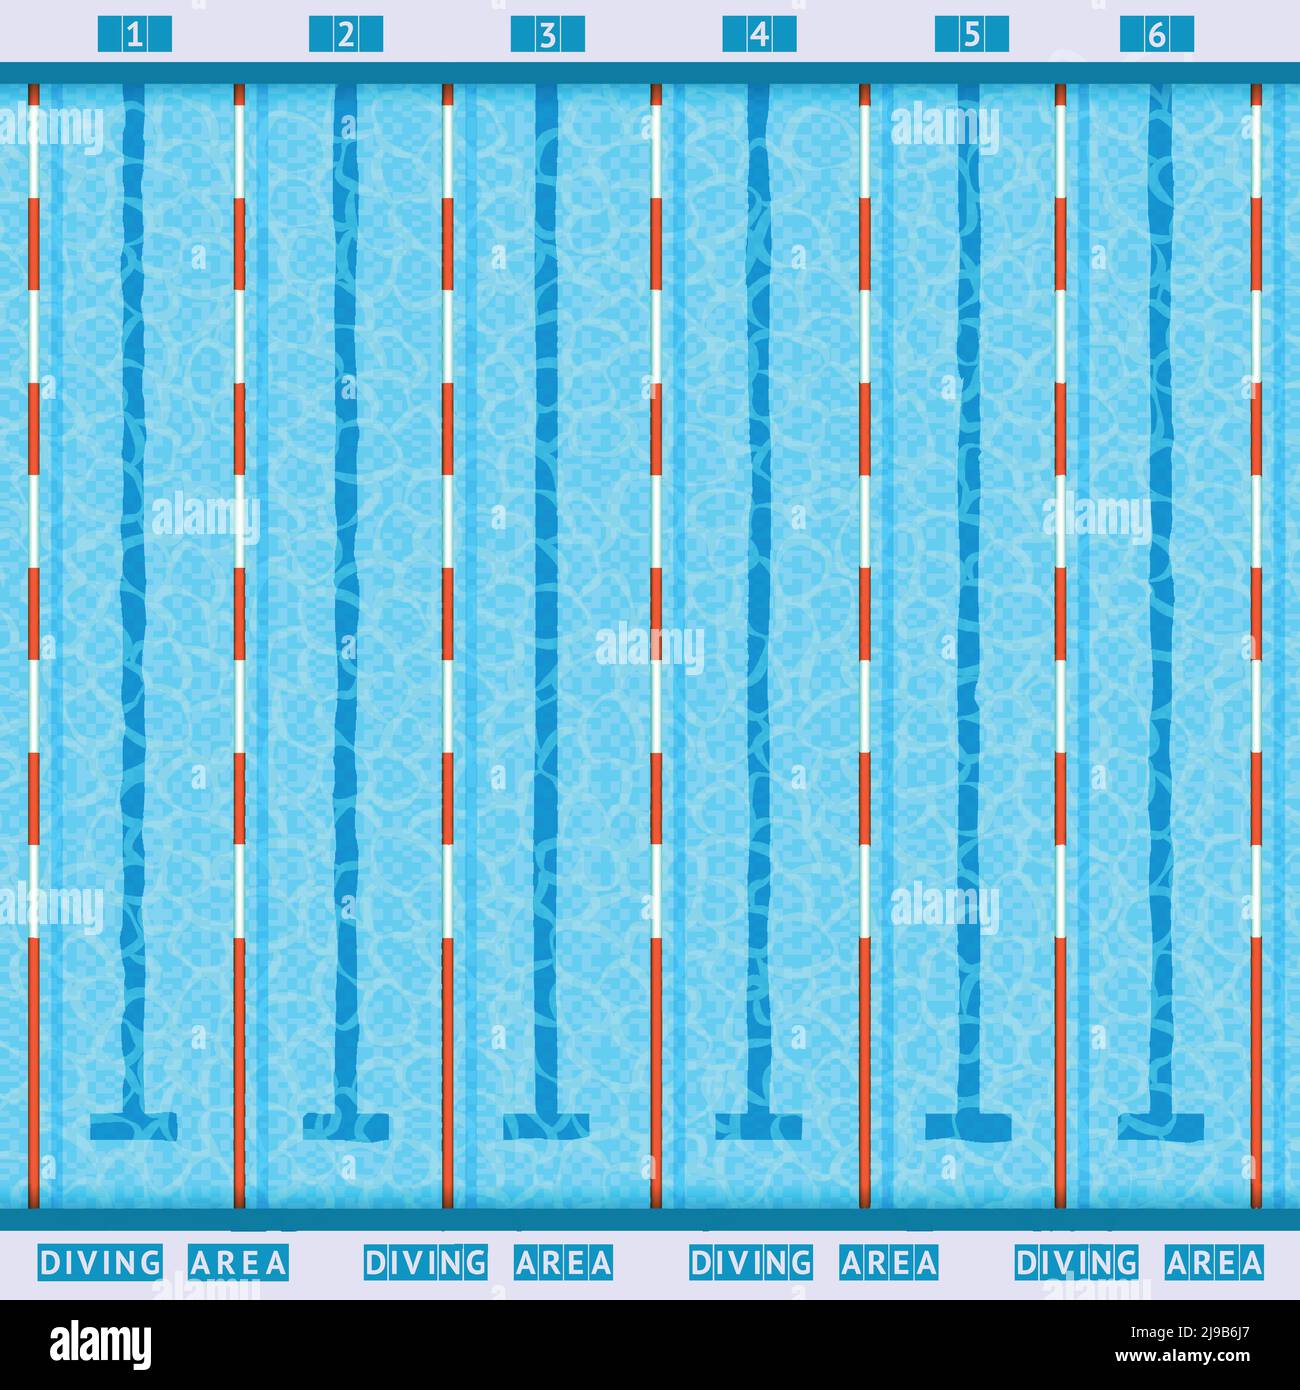 Piscina olimpionica bagni profondi corsie vista dall'alto pittogramma piano con immagine vettoriale dell'acqua trasparente di colore blu Illustrazione Vettoriale